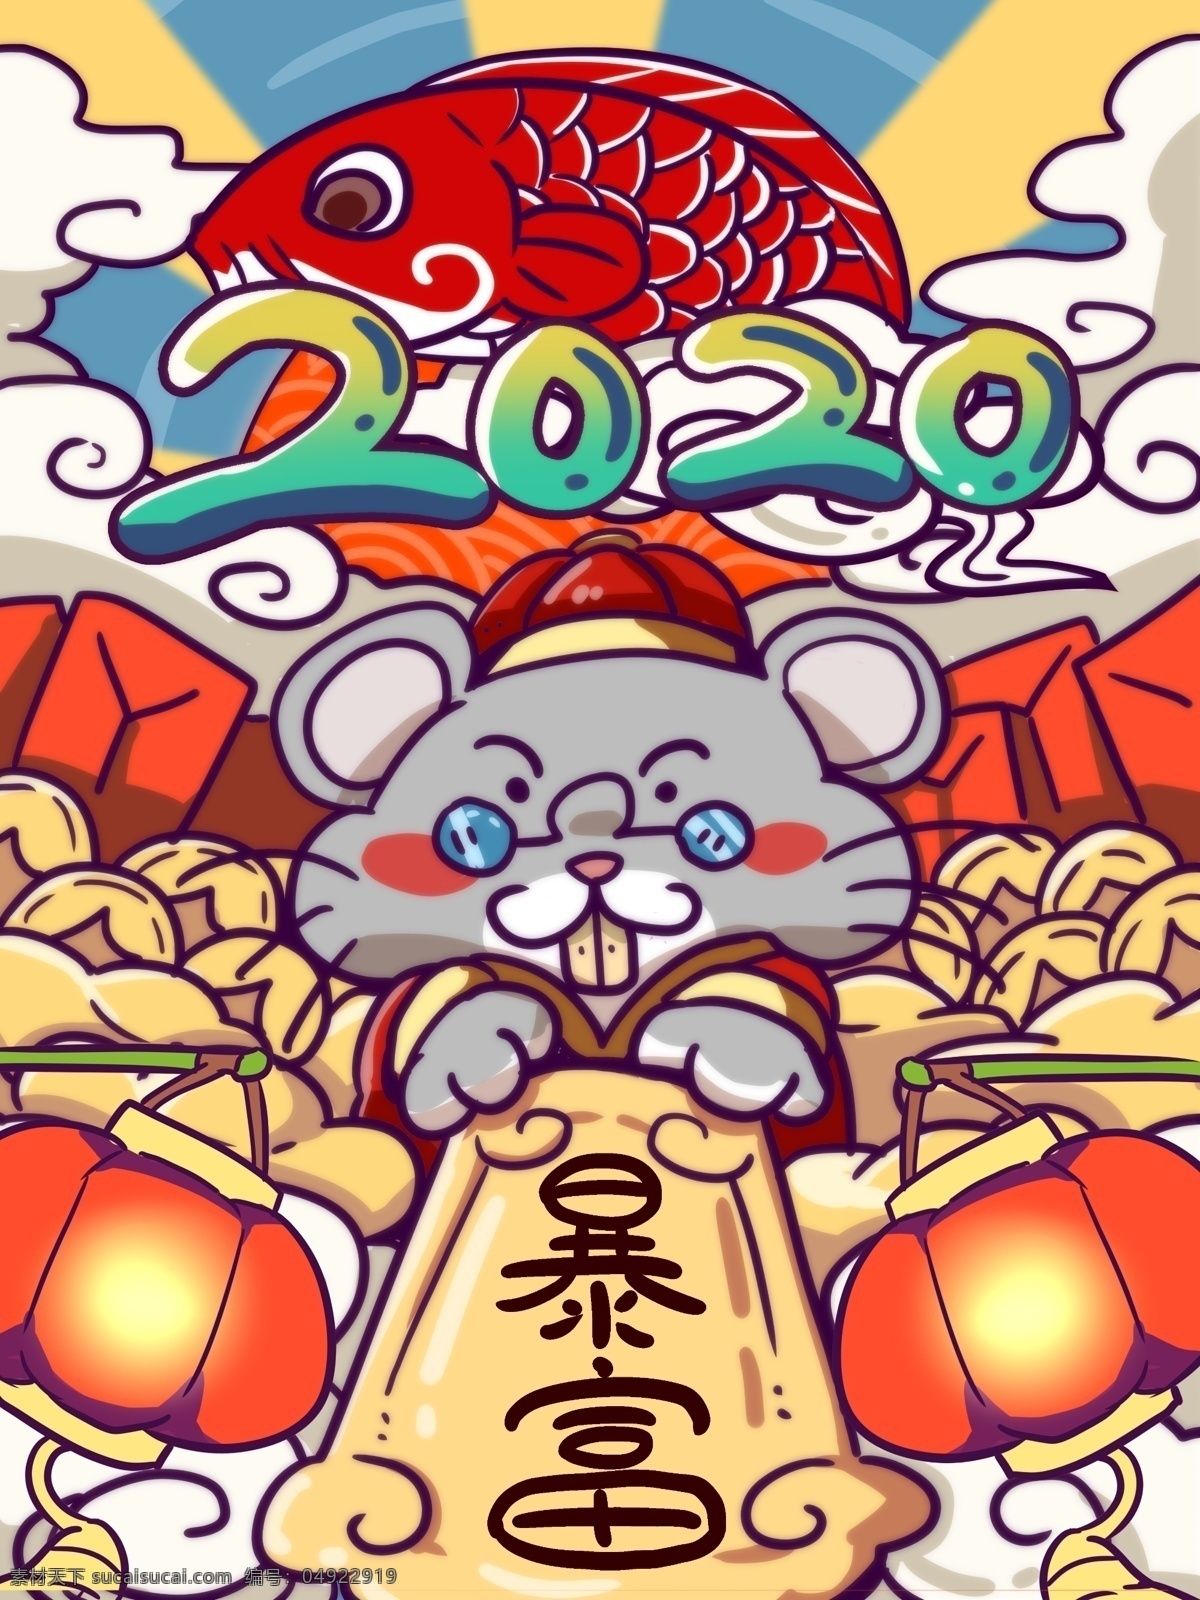 2020 鼠年 卡通 插画 鼠 红包 发财 暴富 元宝 吉祥物 节日节气